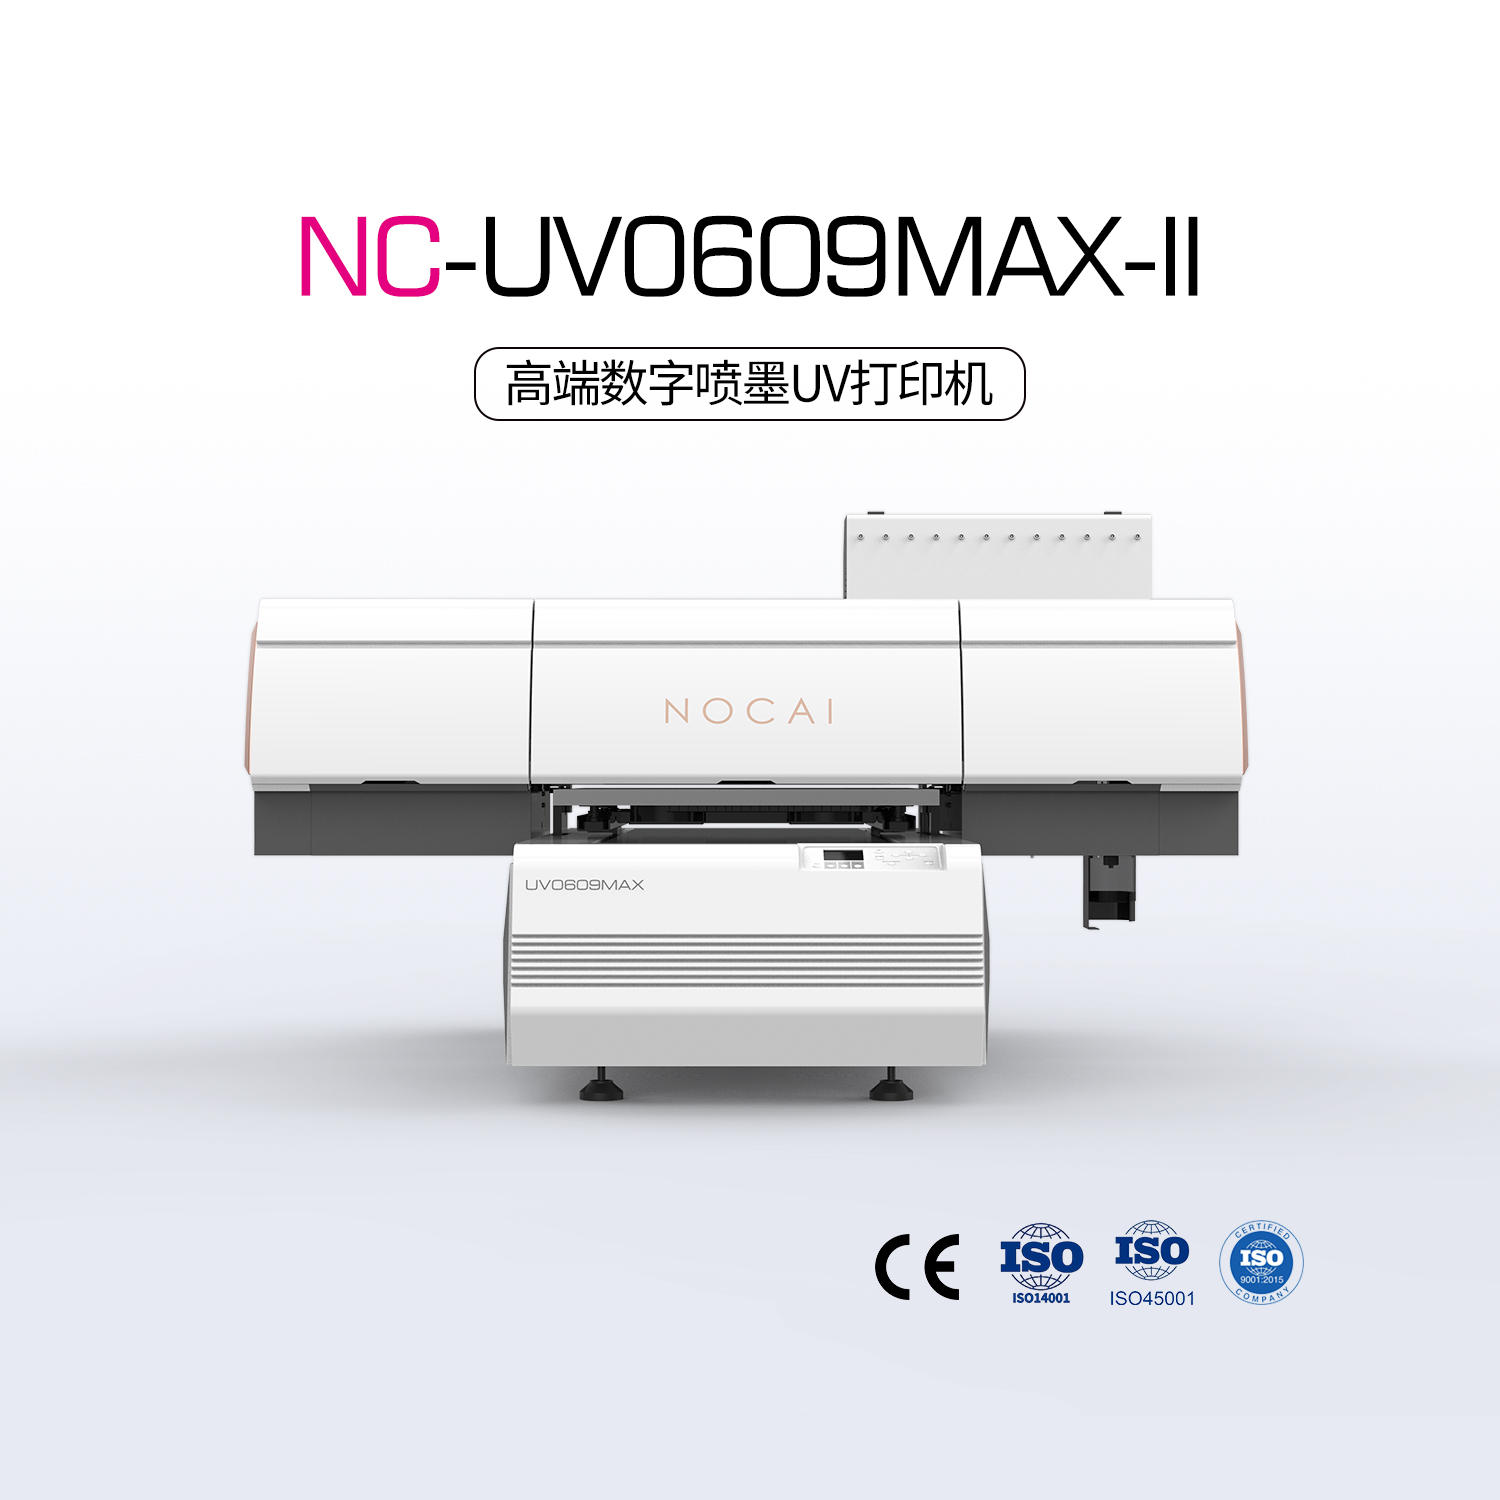 NC-UV0609MAX